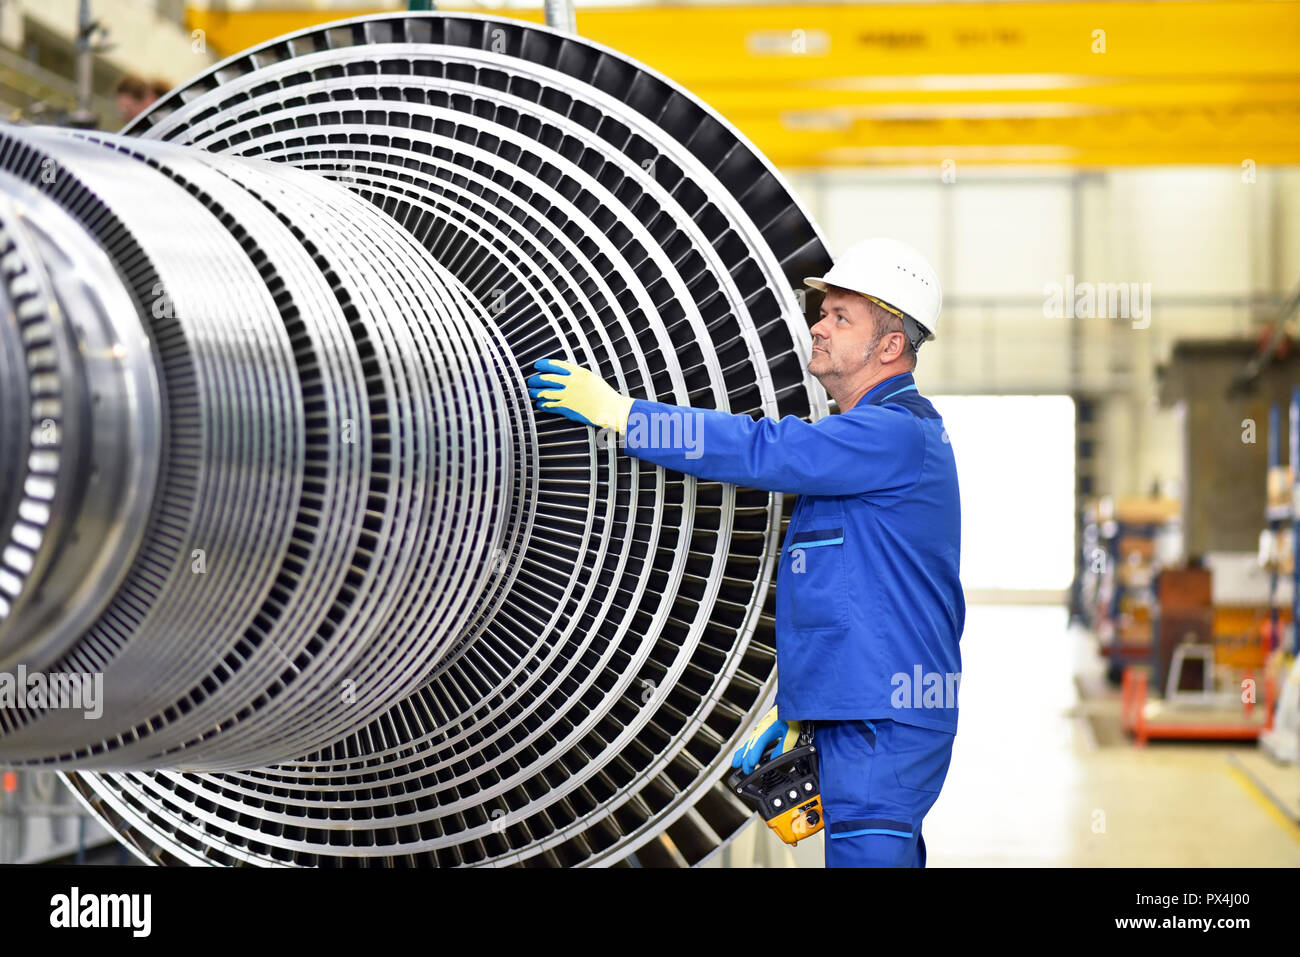 Fabrication de turbines à vapeur de travailleurs dans une usine industrielle Banque D'Images